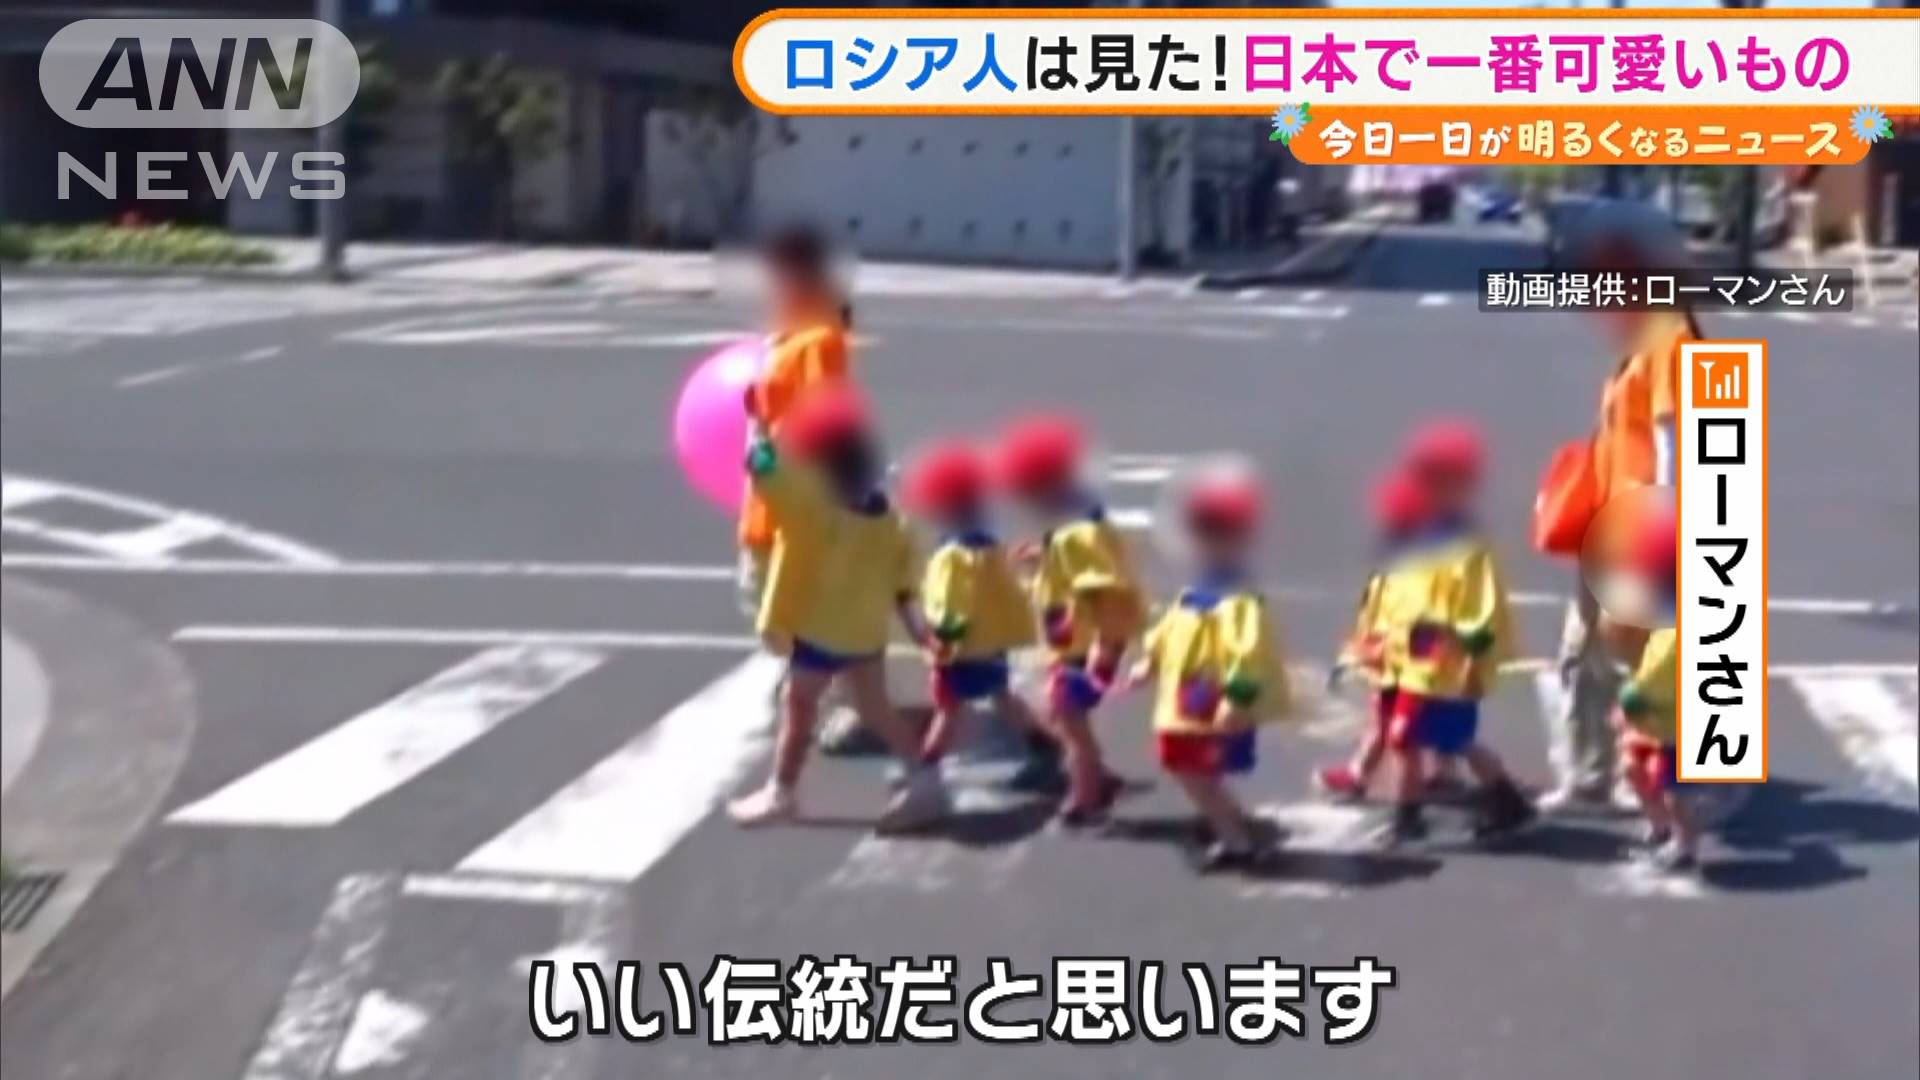 ロシア人は見た 日本で一番可愛い 動画が話題に テレ朝news テレビ朝日のニュースサイト